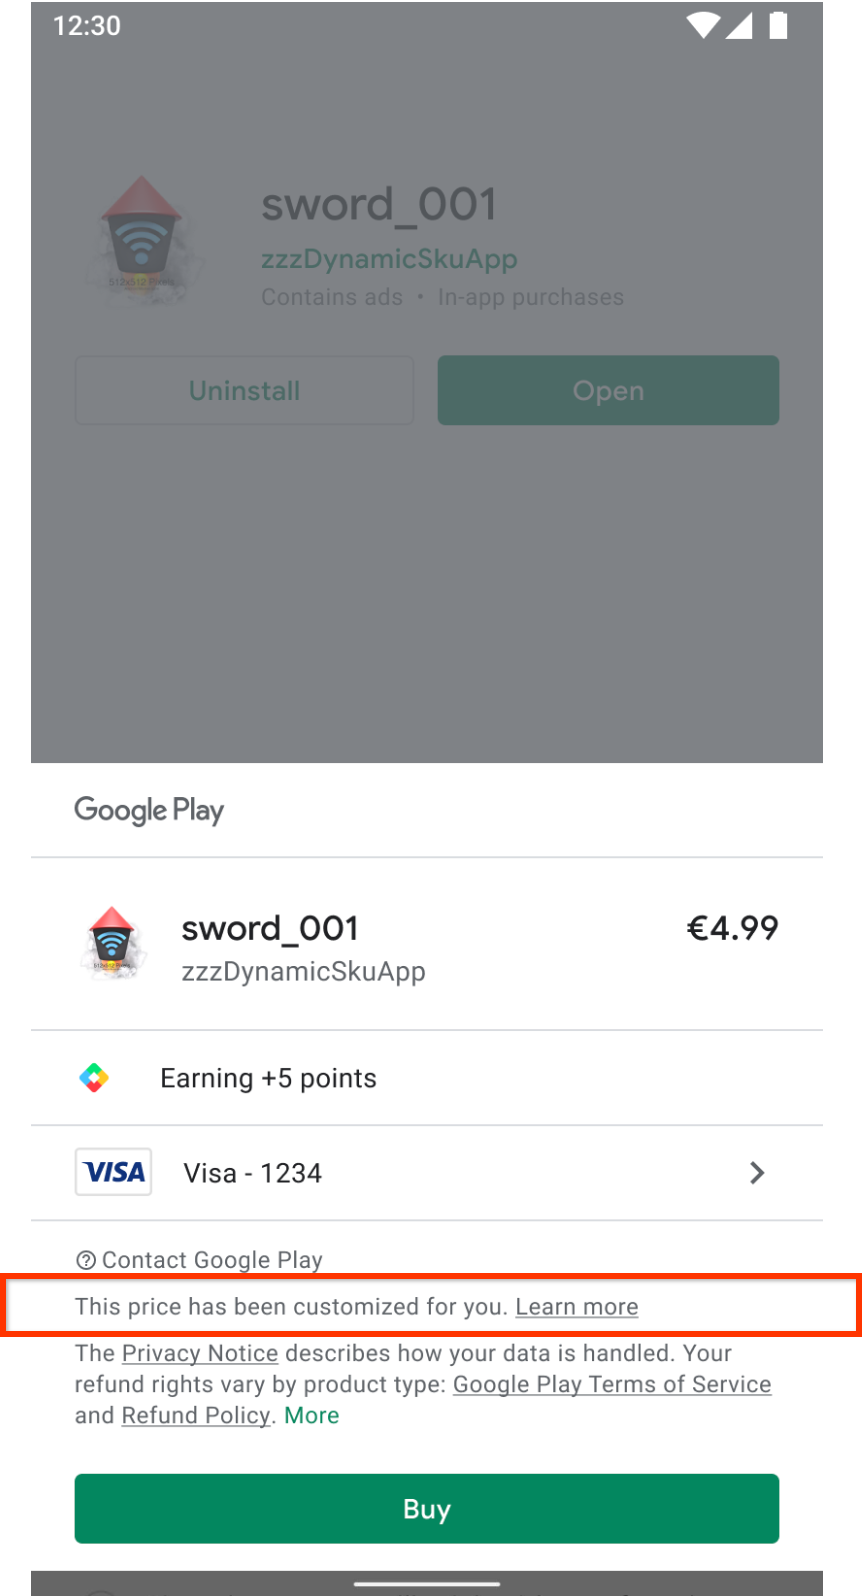 Ekran zakupu w Google Play z informacją, że cena została dostosowana do potrzeb użytkownika.